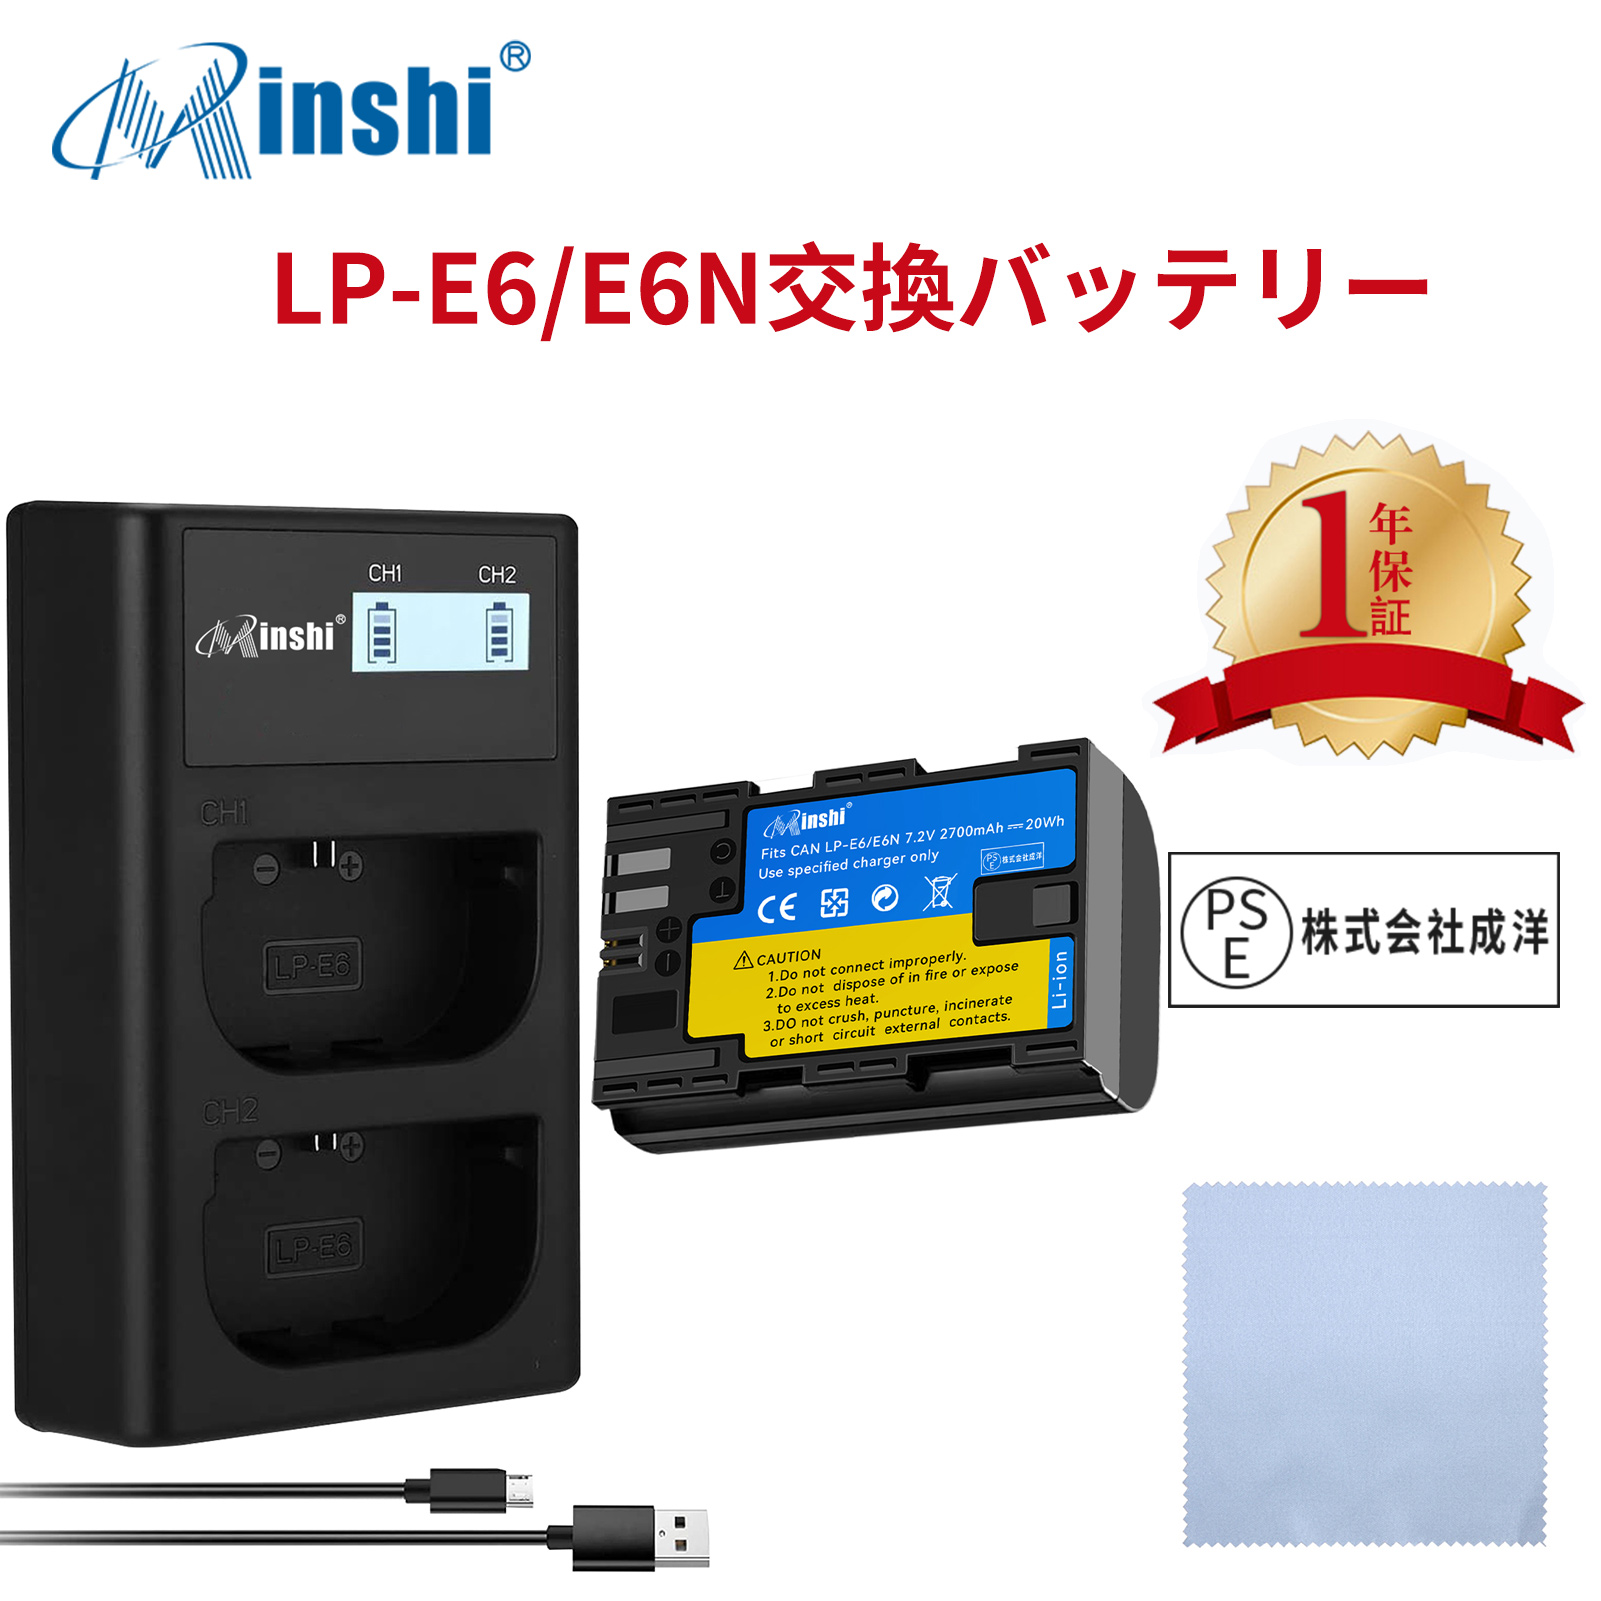 【セット】minshi Canon EOS 7D  LP-E6NH LP-E6N EOS6D CANON 80D 【2700mAh 7.2V】高品質LP-E6NH交換用バッテリー